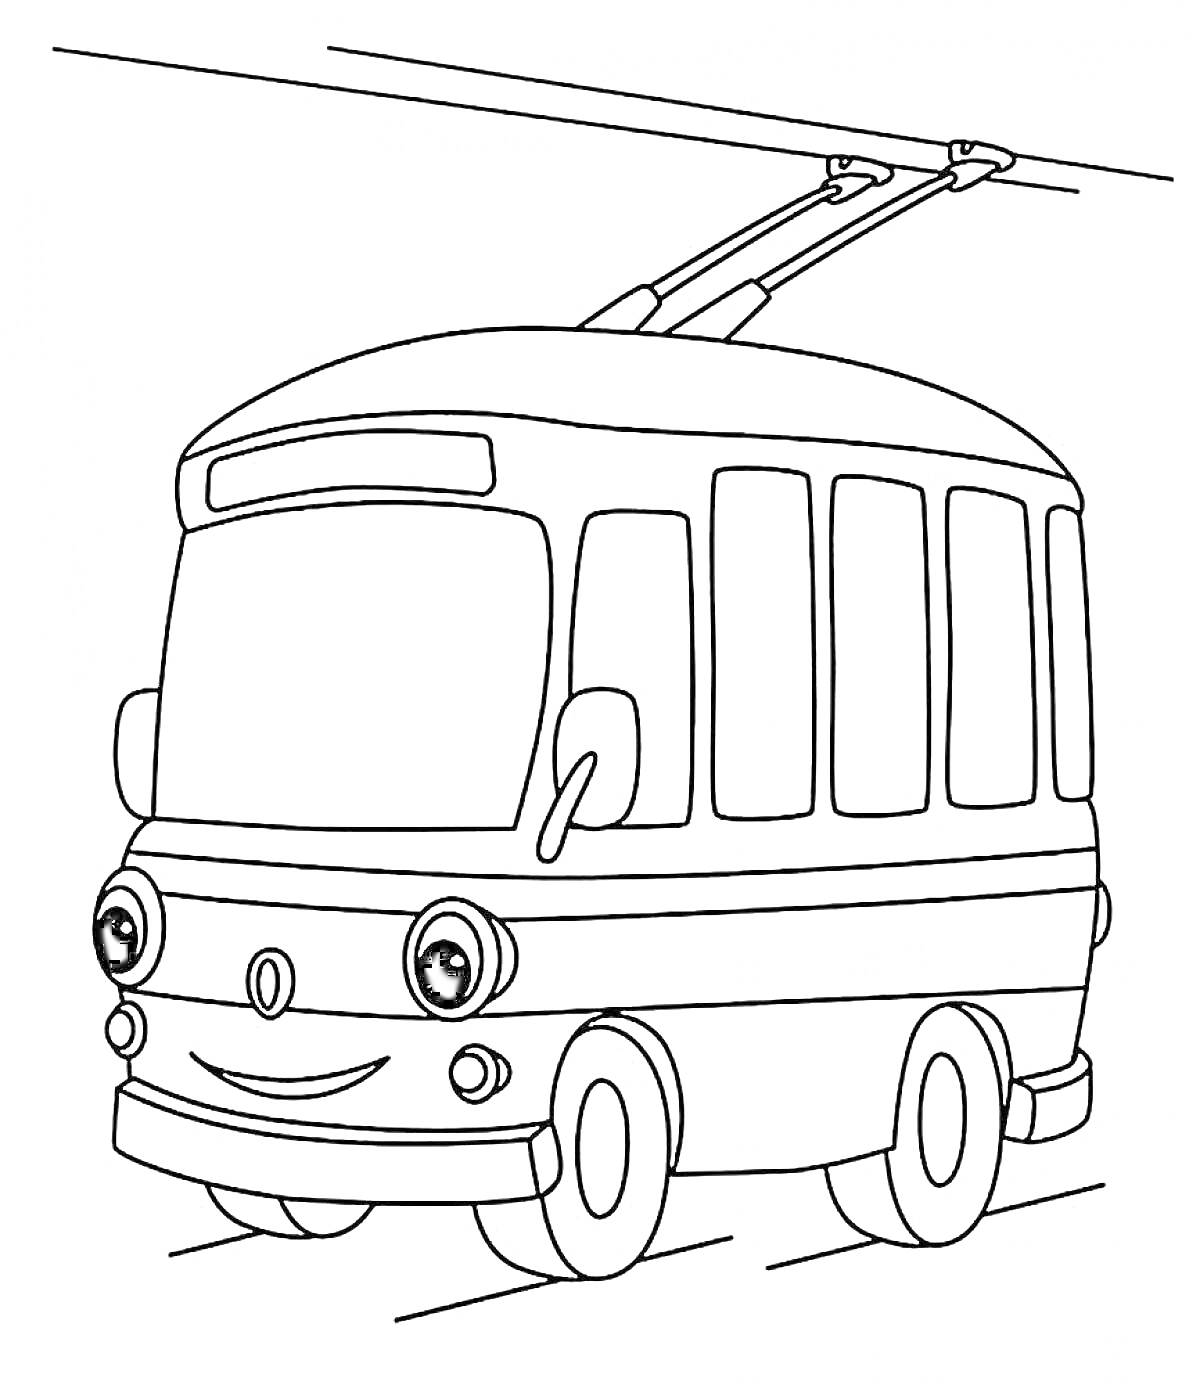 Троллейбус с глазами и улыбкой, подключенный к проводам